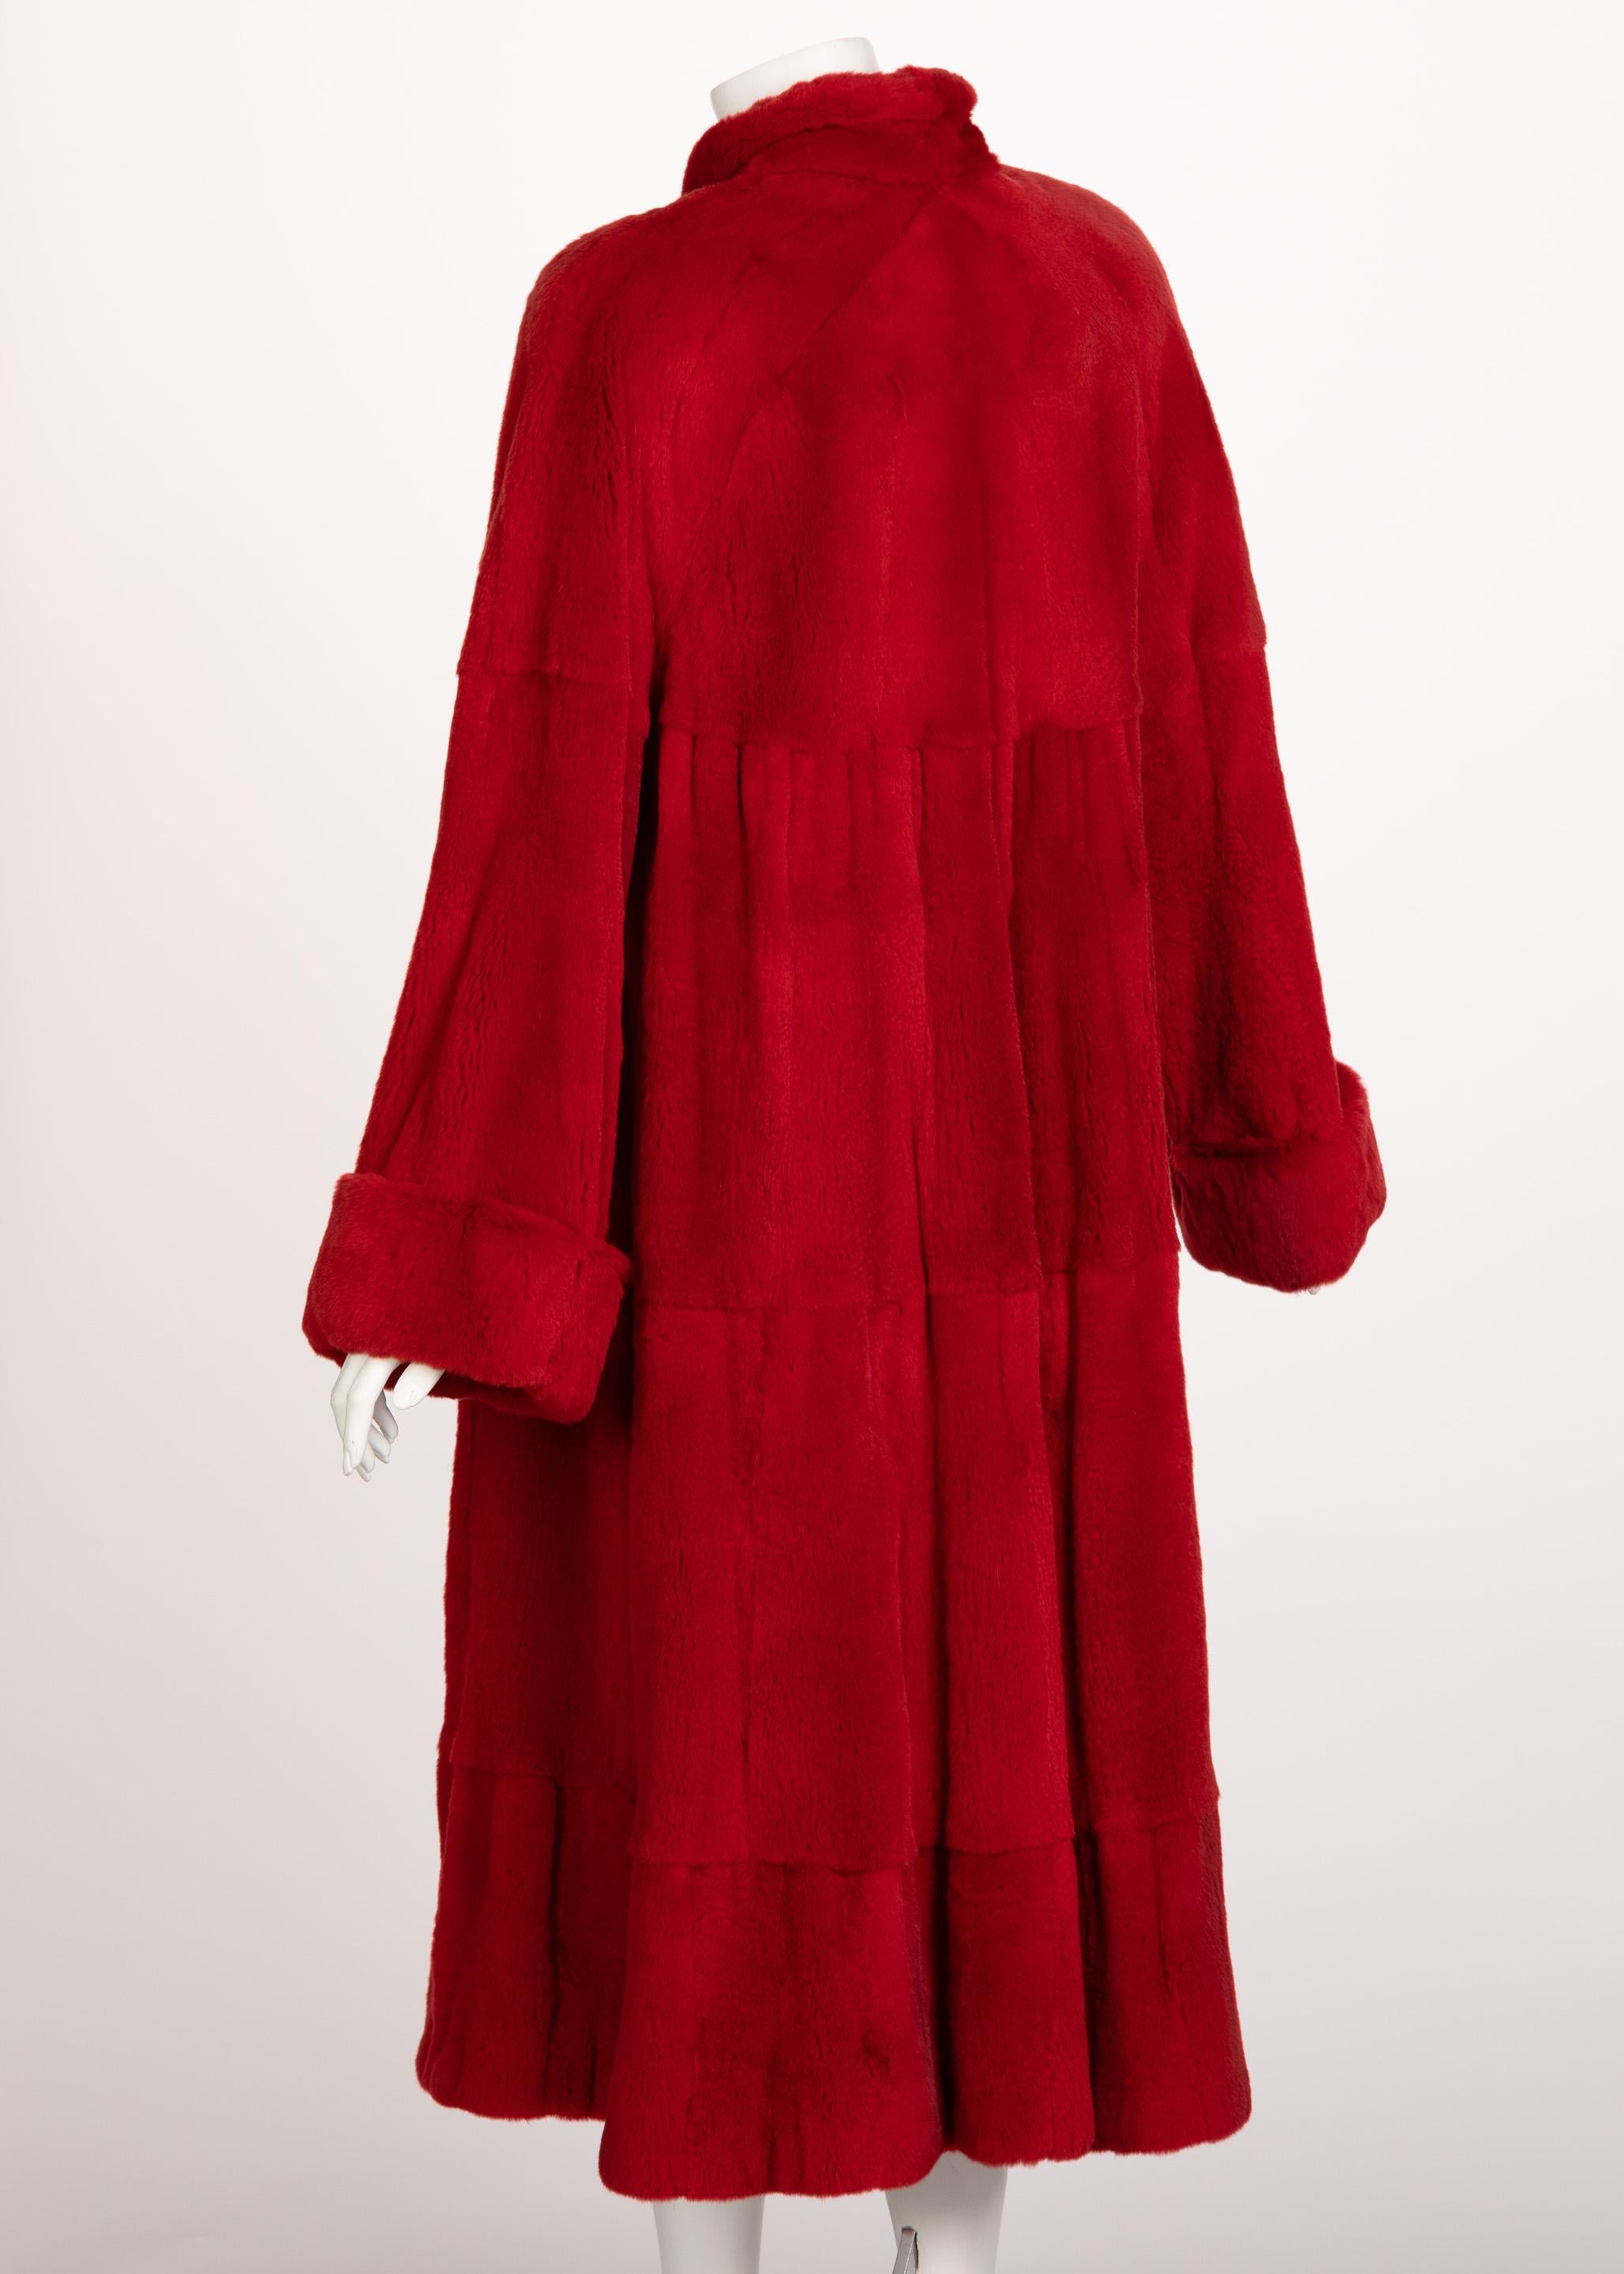 Roter Nerzpelz-Mantel in voller Länge Damen im Angebot